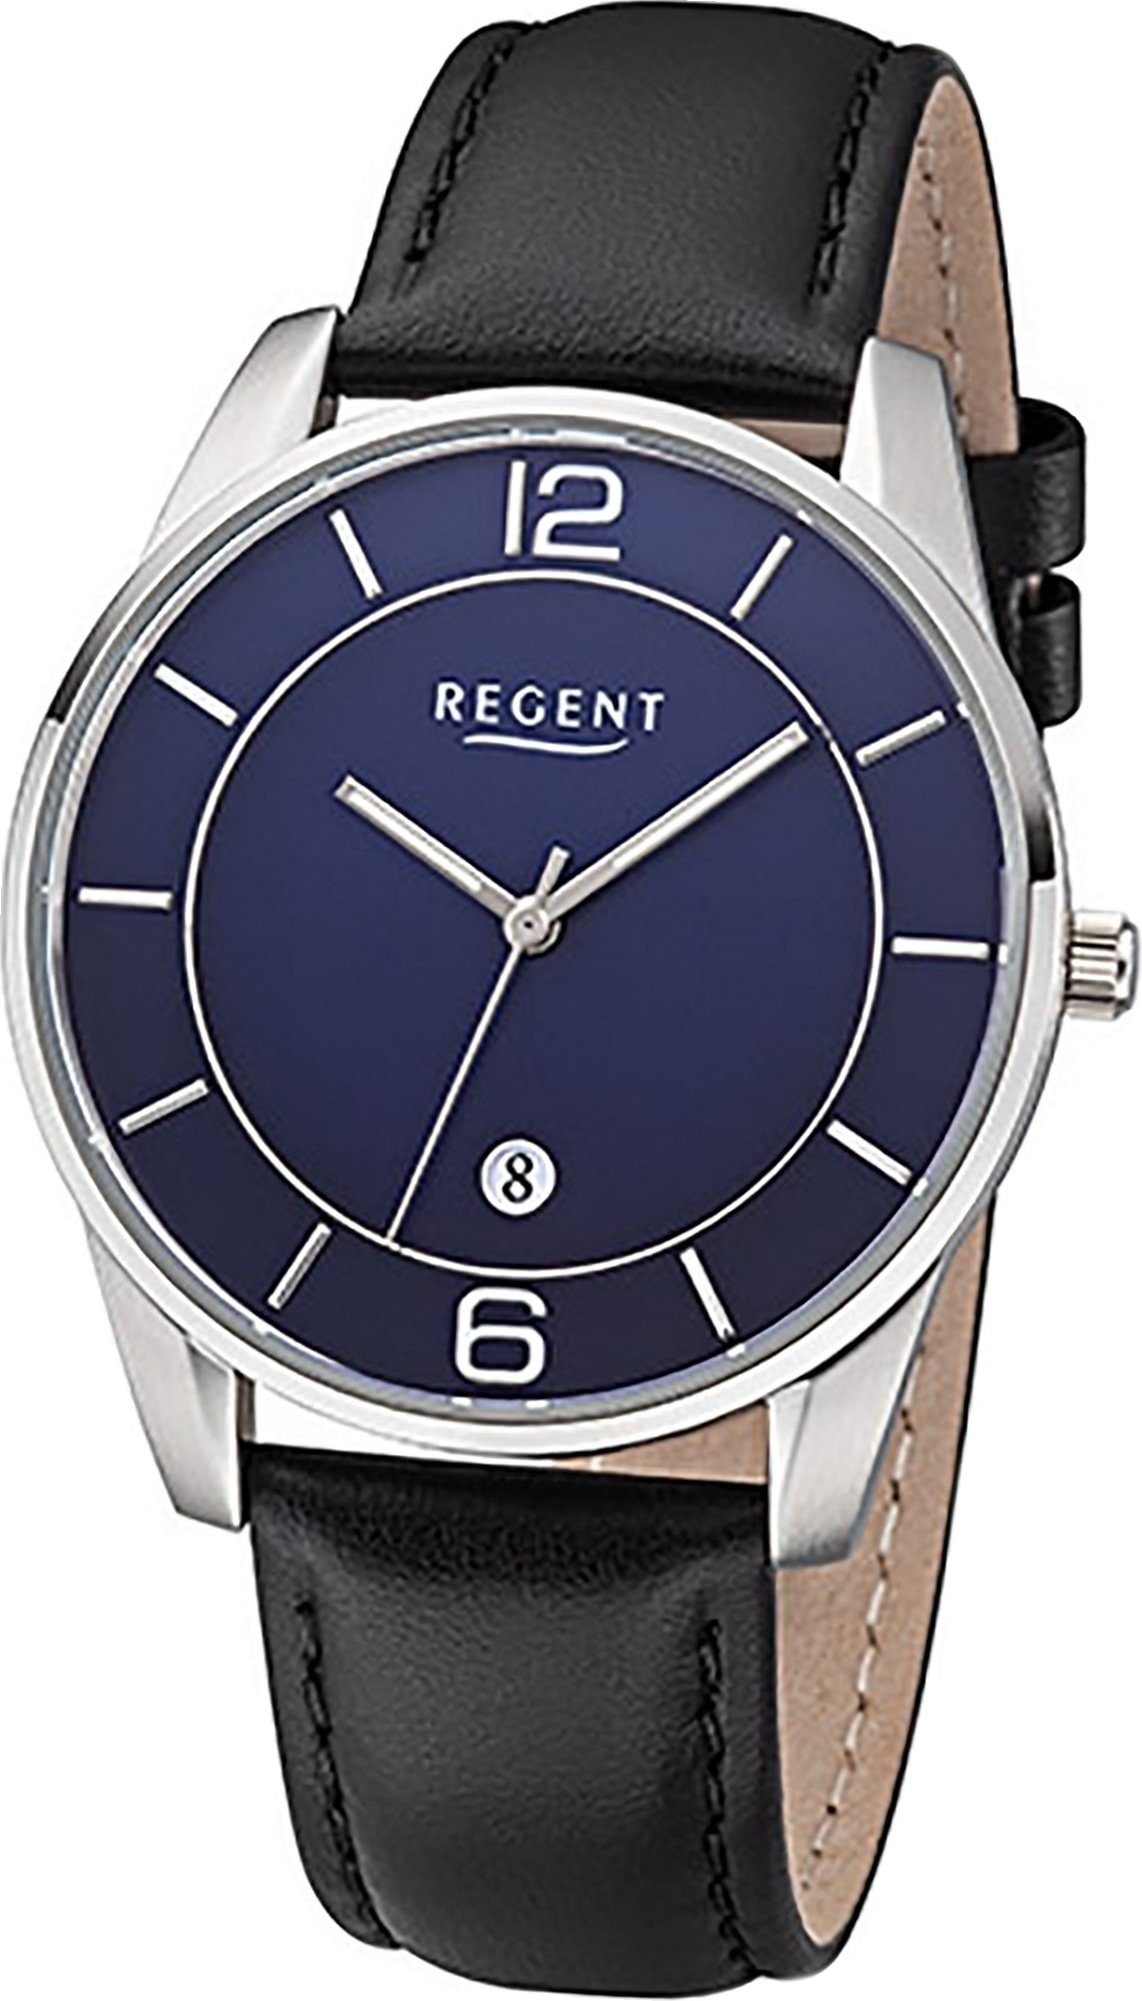 Regent Quarzuhr Regent Leder Herren Uhr F-1235 Analog, Herrenuhr Lederarmband schwarz, rundes Gehäuse, groß (ca. 40mm)